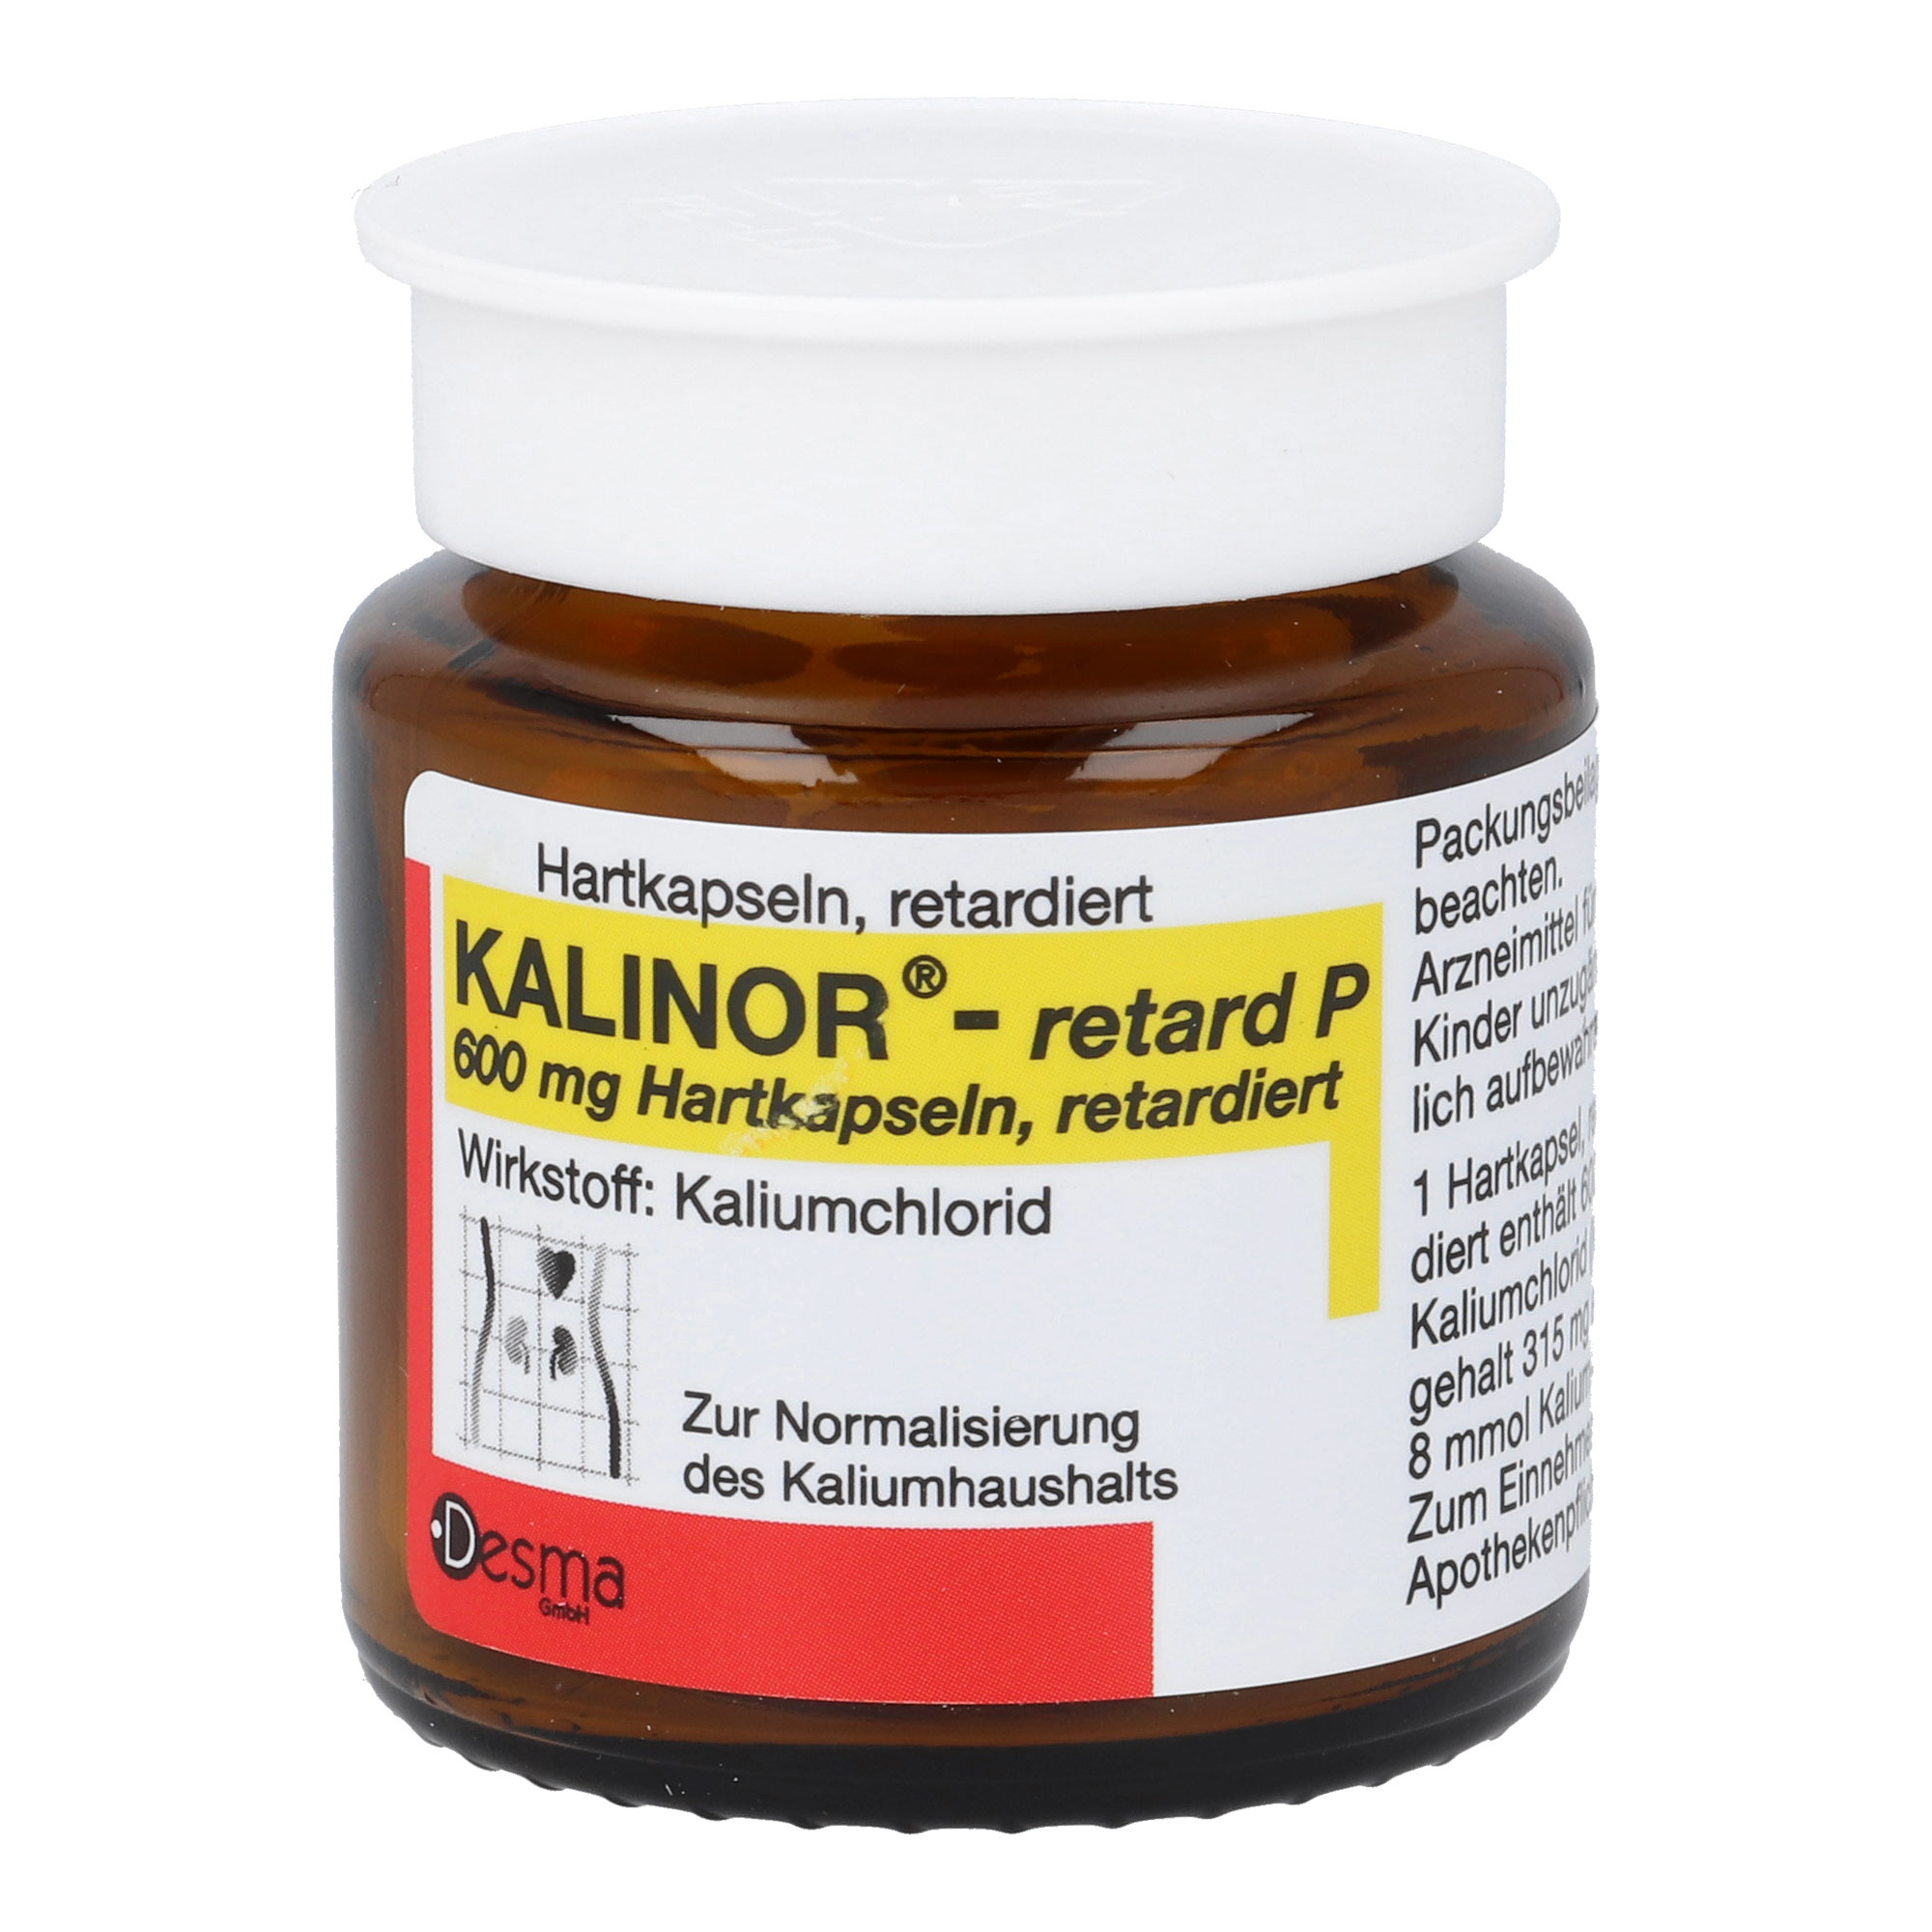 Mineralstoff-/Kaliumpräparat zur Normalisierung des Kaliumhaushalts.